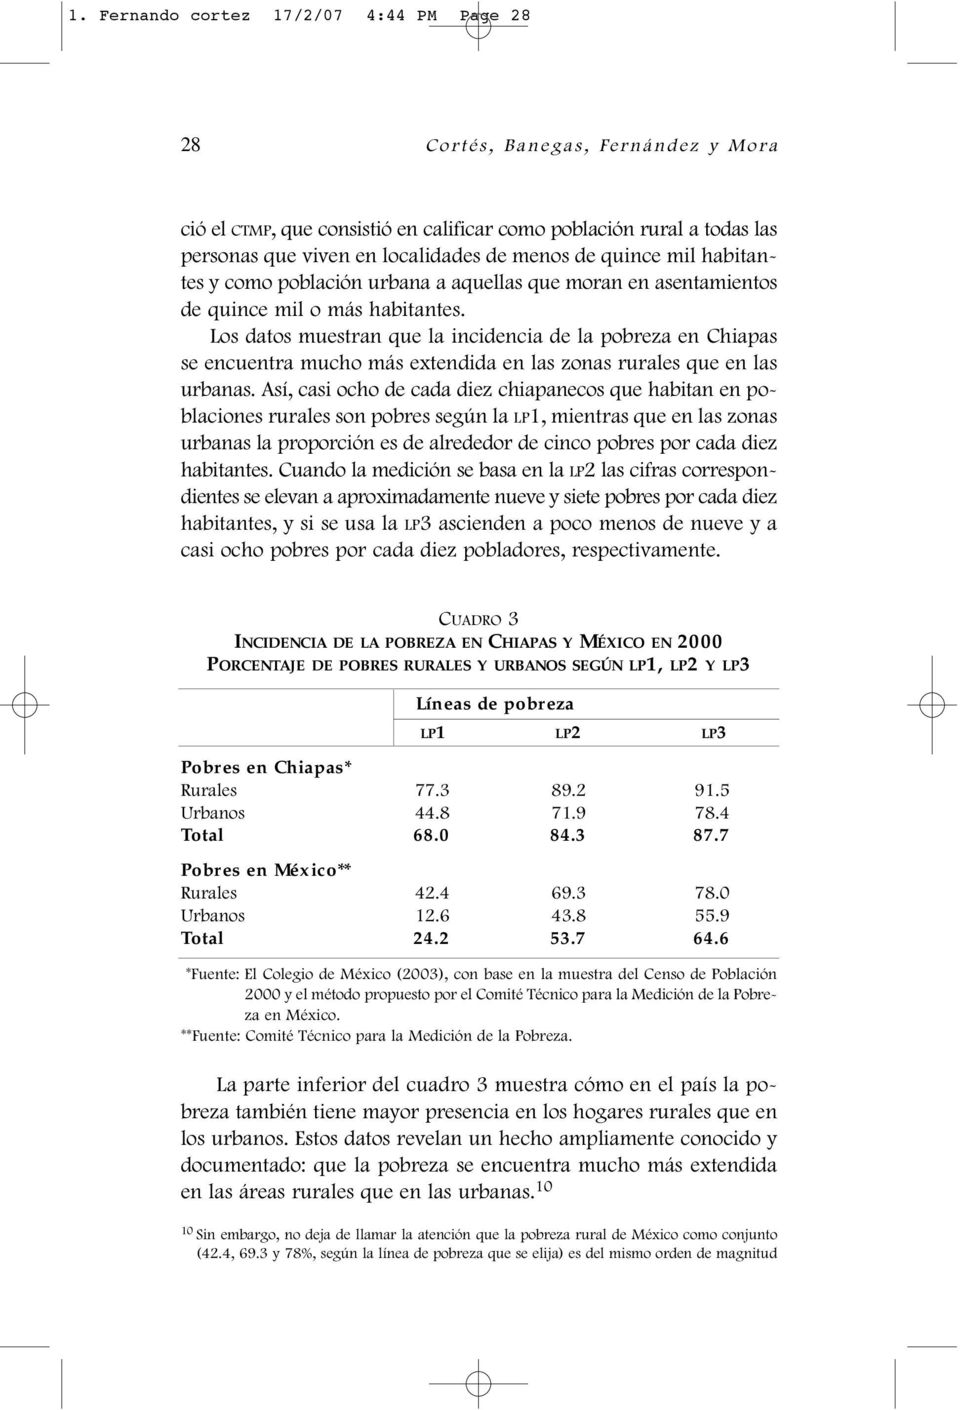 Los datos muestran que la incidencia de la pobreza en Chiapas se encuentra mucho más extendida en las zonas rurales que en las urbanas.